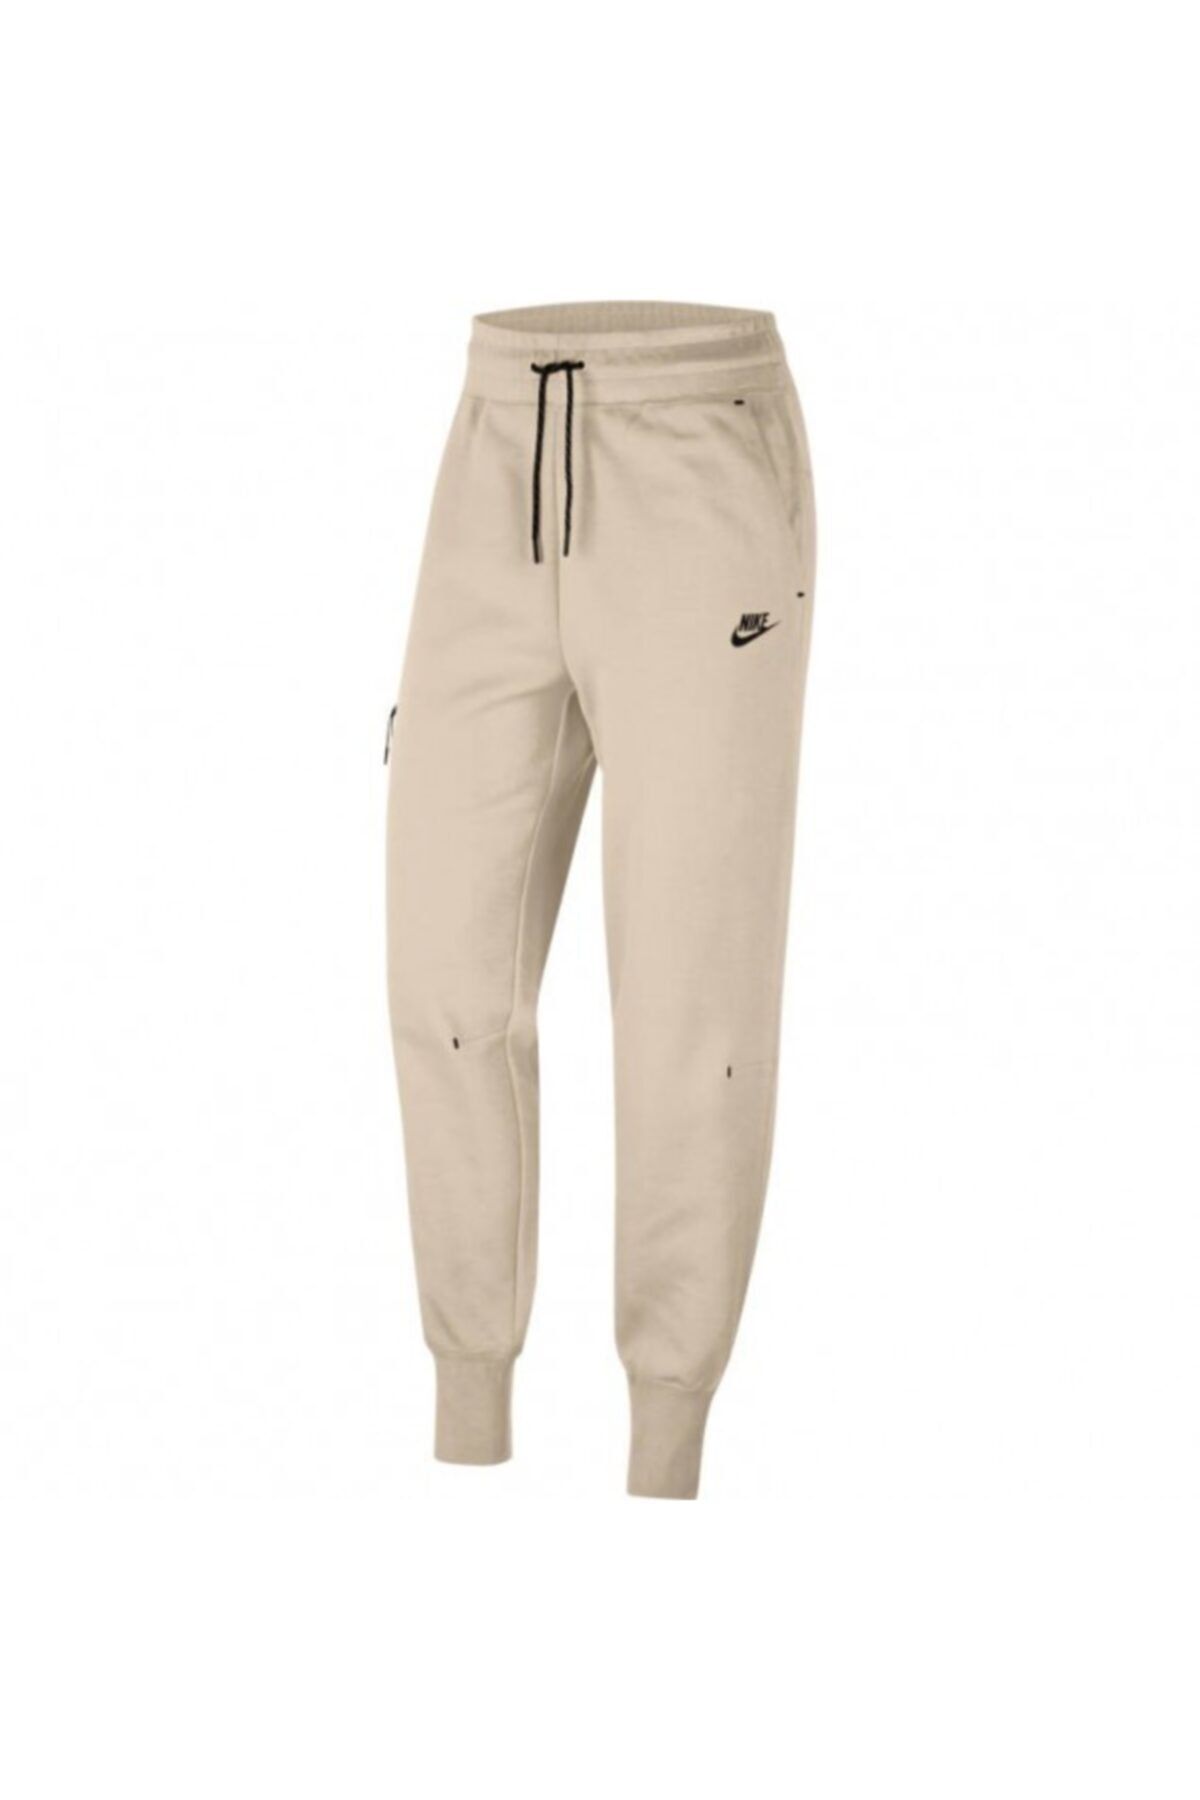 Nike Size 2XL Women's Sportswear Tech Fleece Pants Joggers CW4292